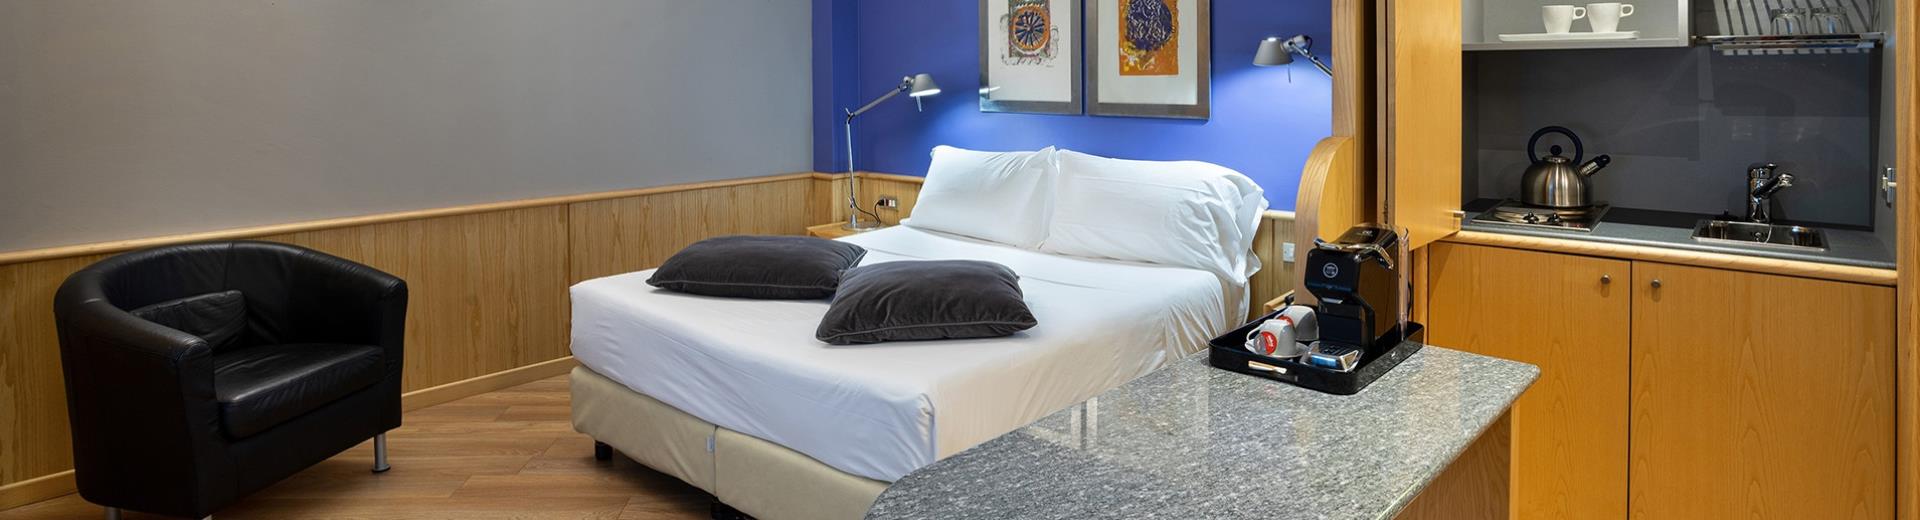 Servizi inclusi e tanto relax nelle camere del BW Plus Executive Hotel and Suites